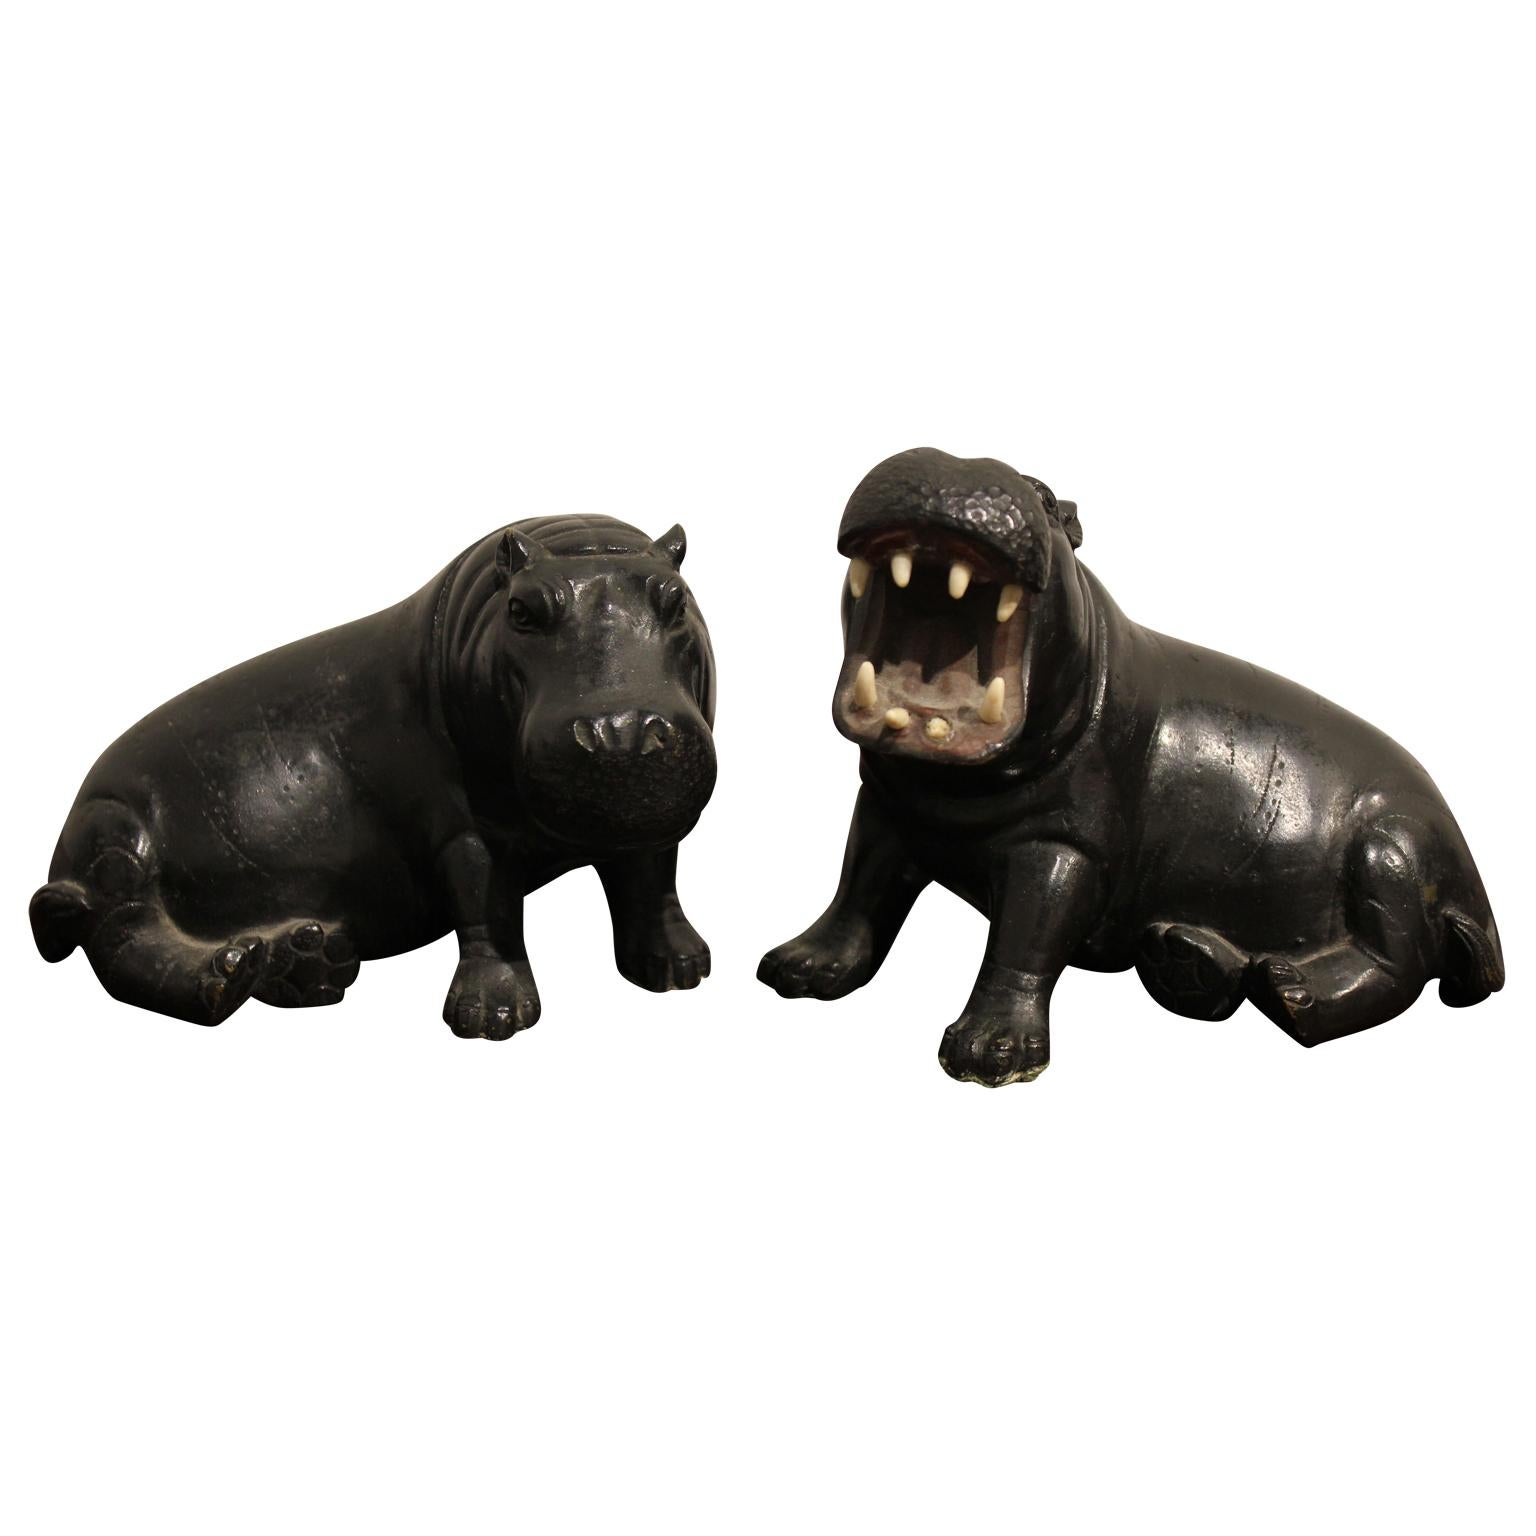 brass hippo figurine